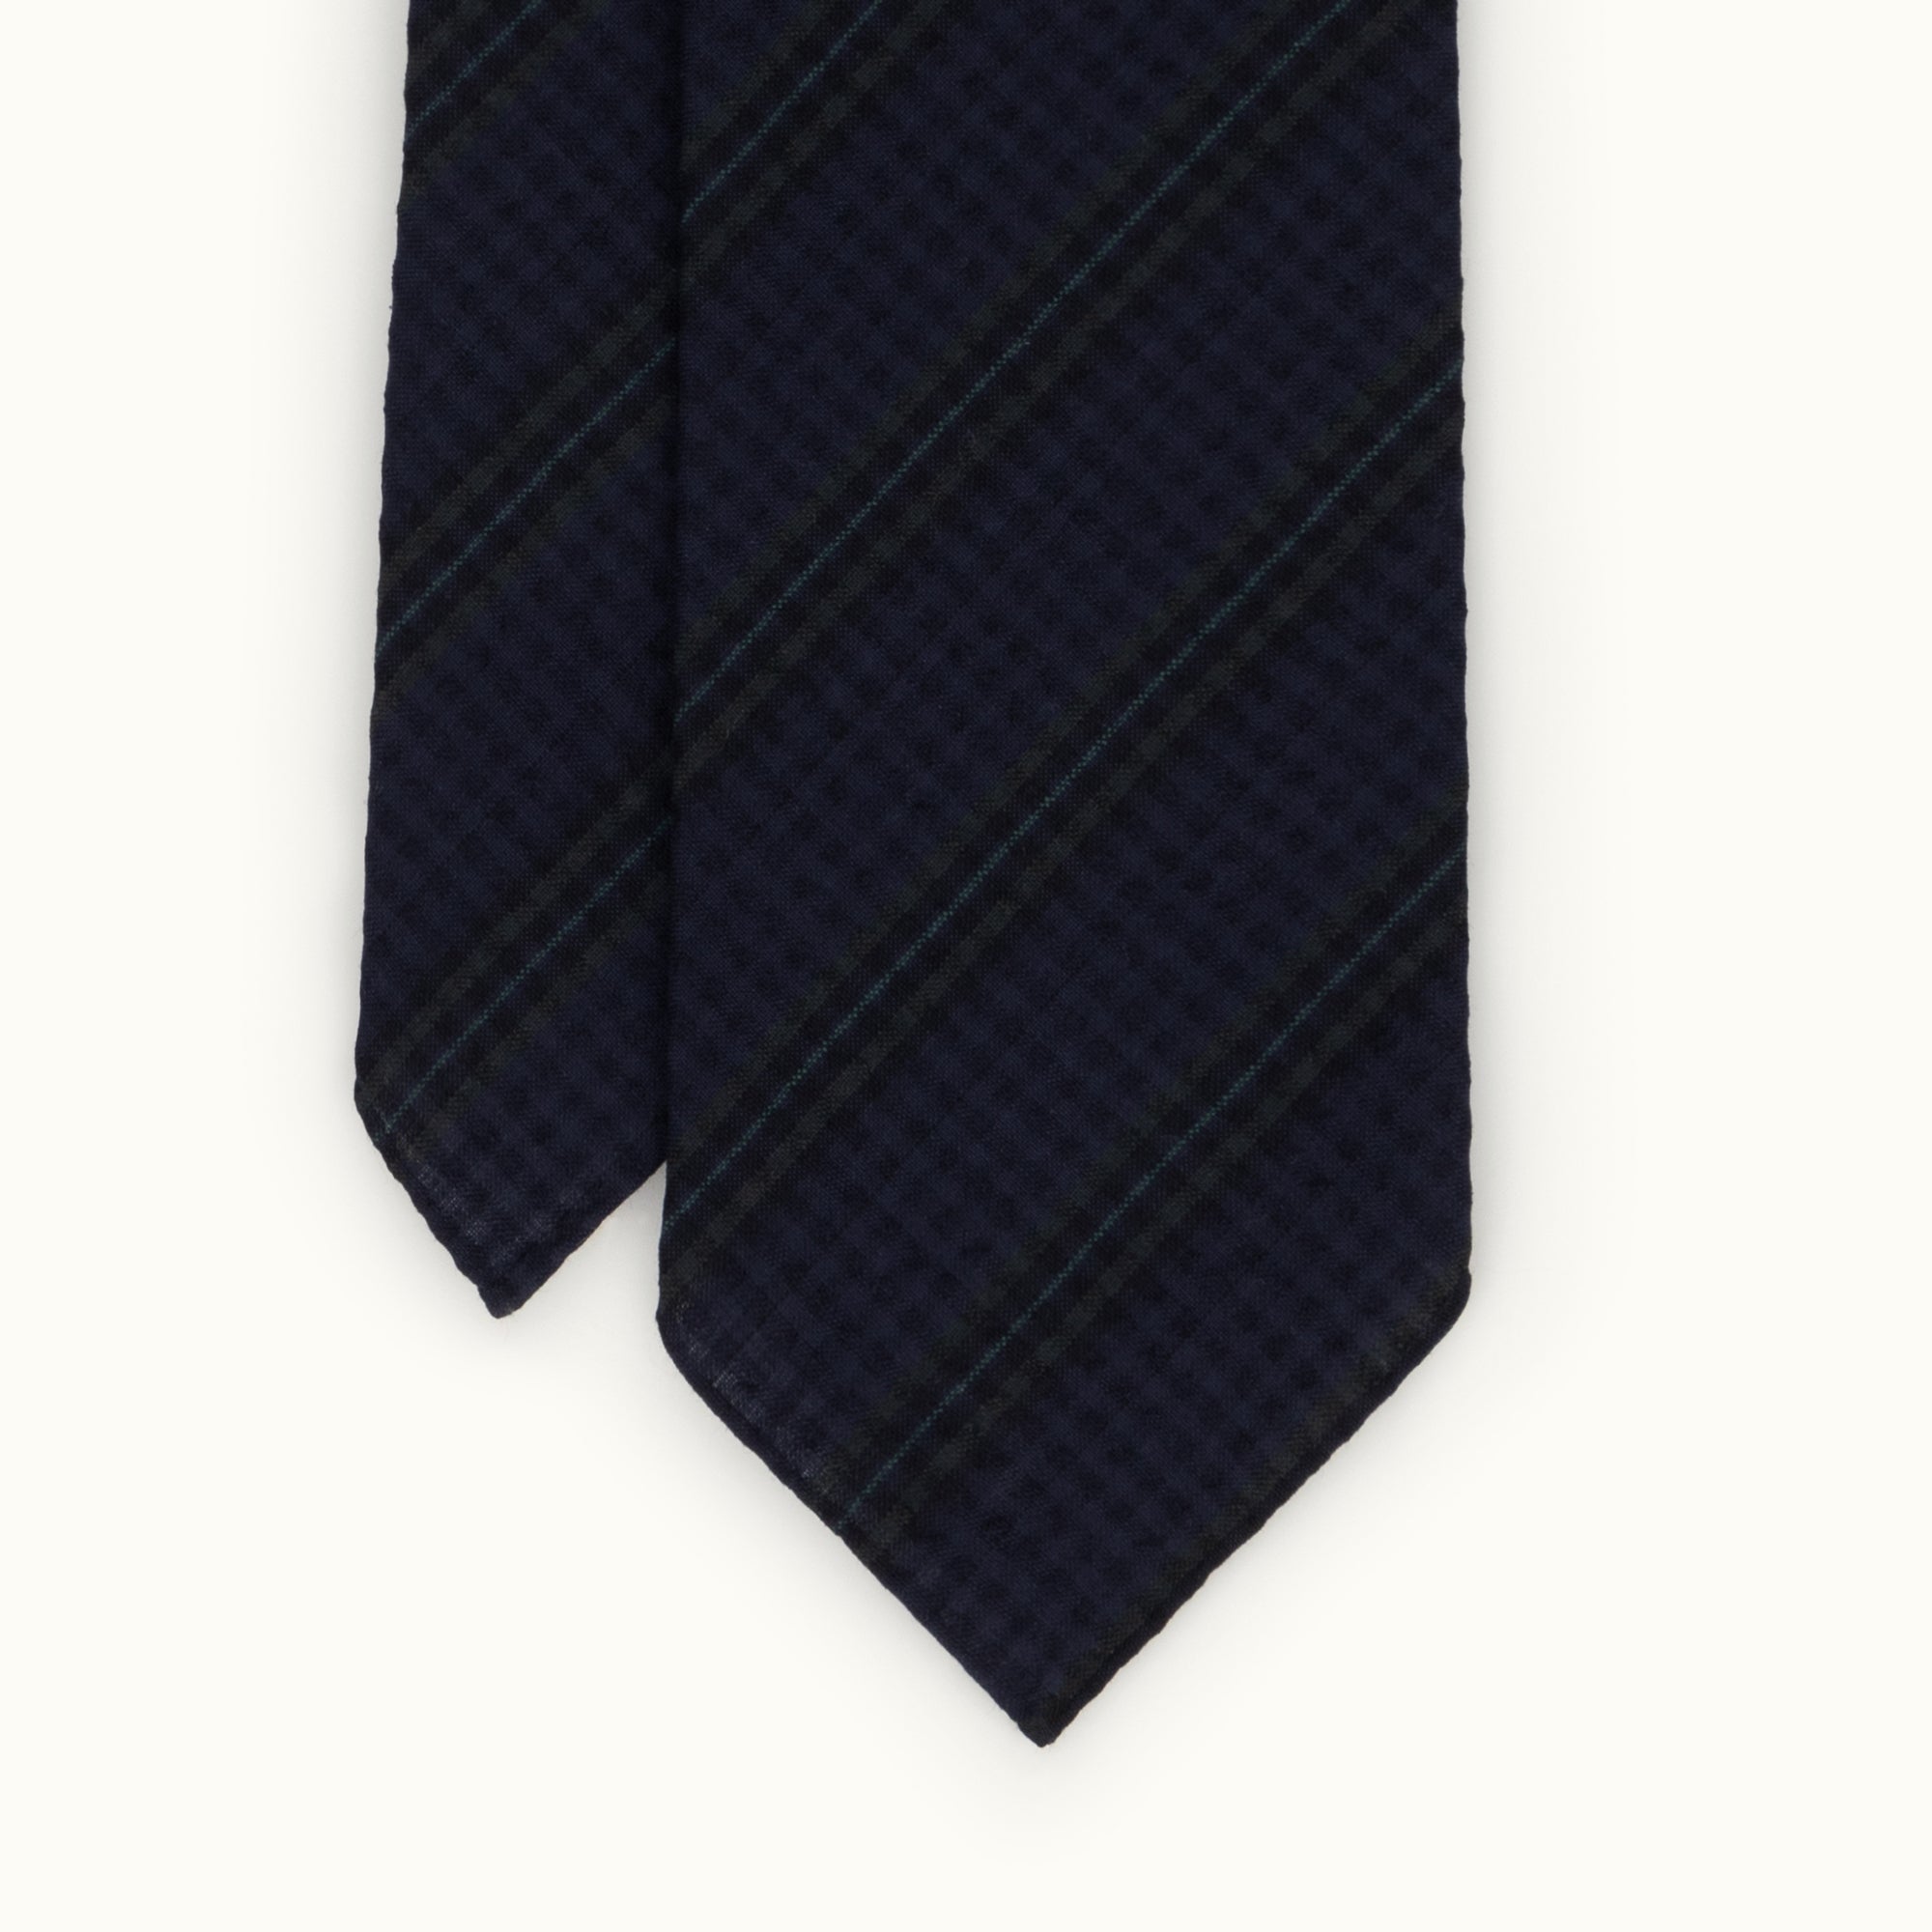 Navy & Green Stripe Seersucker Tie